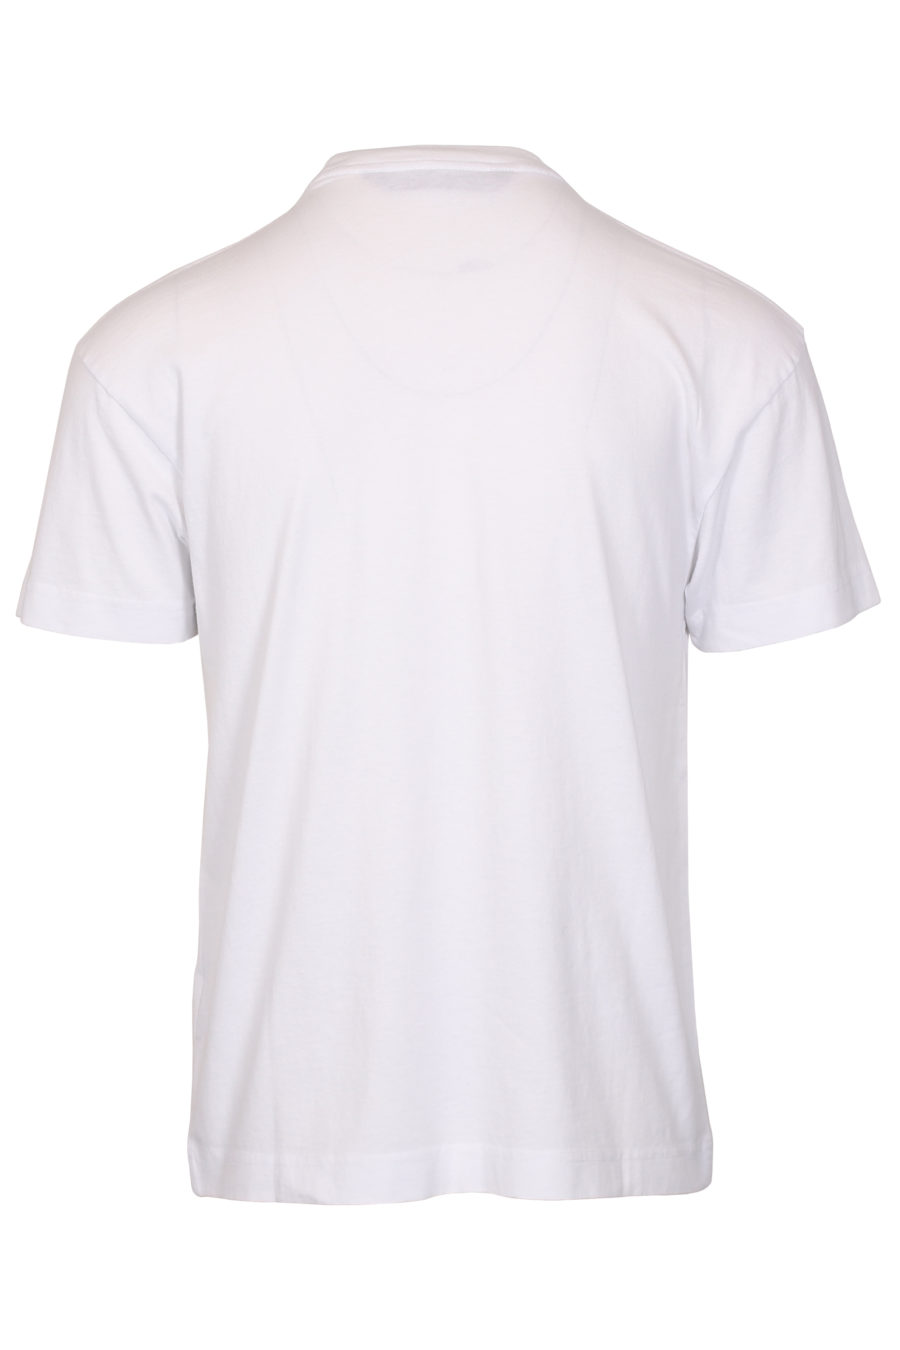 Camiseta blanca logotipo Palm Beach - IMG 1053